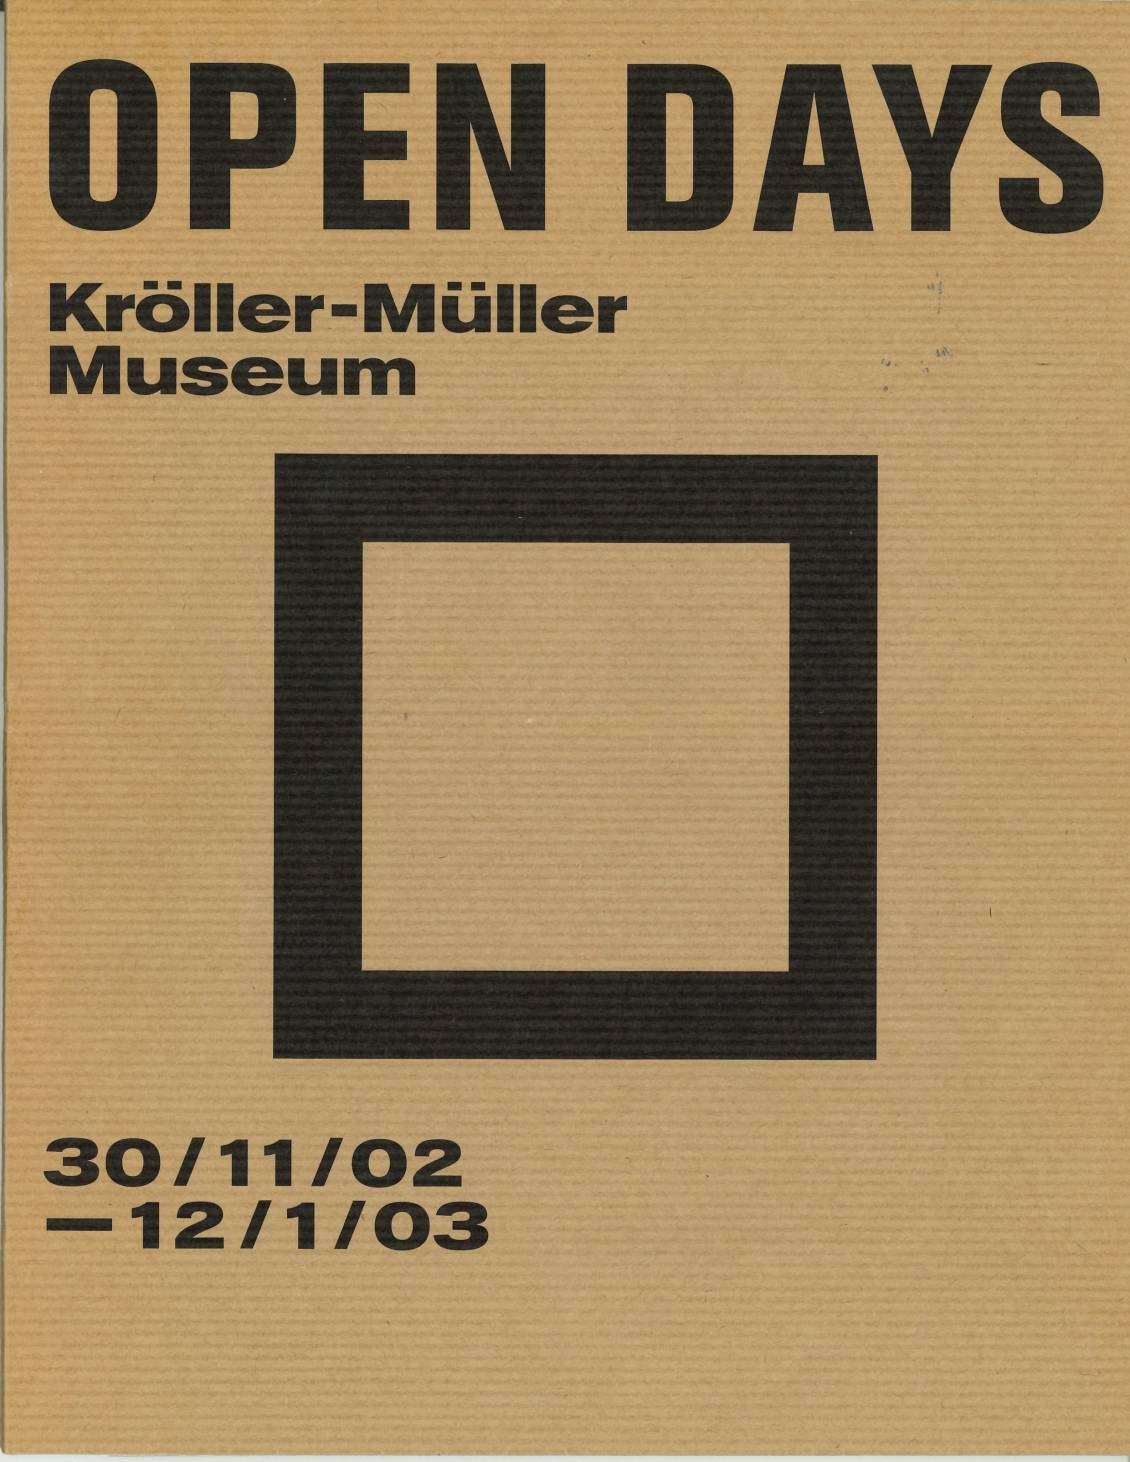 ROMA Publications, Open days; Kröller-Müller Museum, 2002